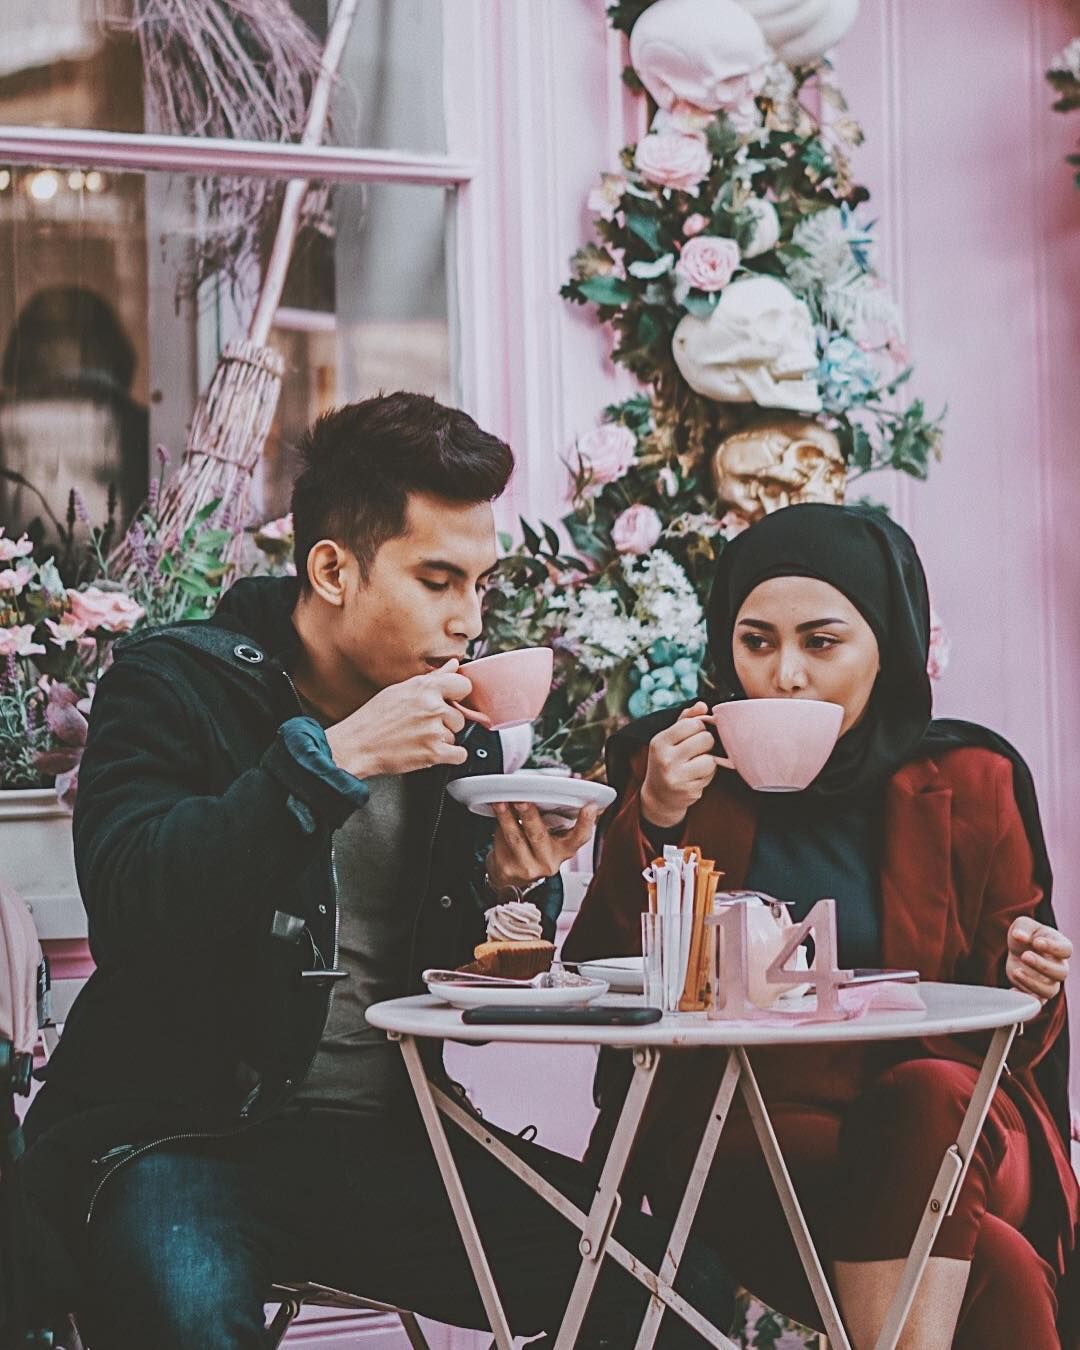 Intip Lagi Momen Romantis Niko Al Hakim dan Rachel Vennya saat Makan Berdua